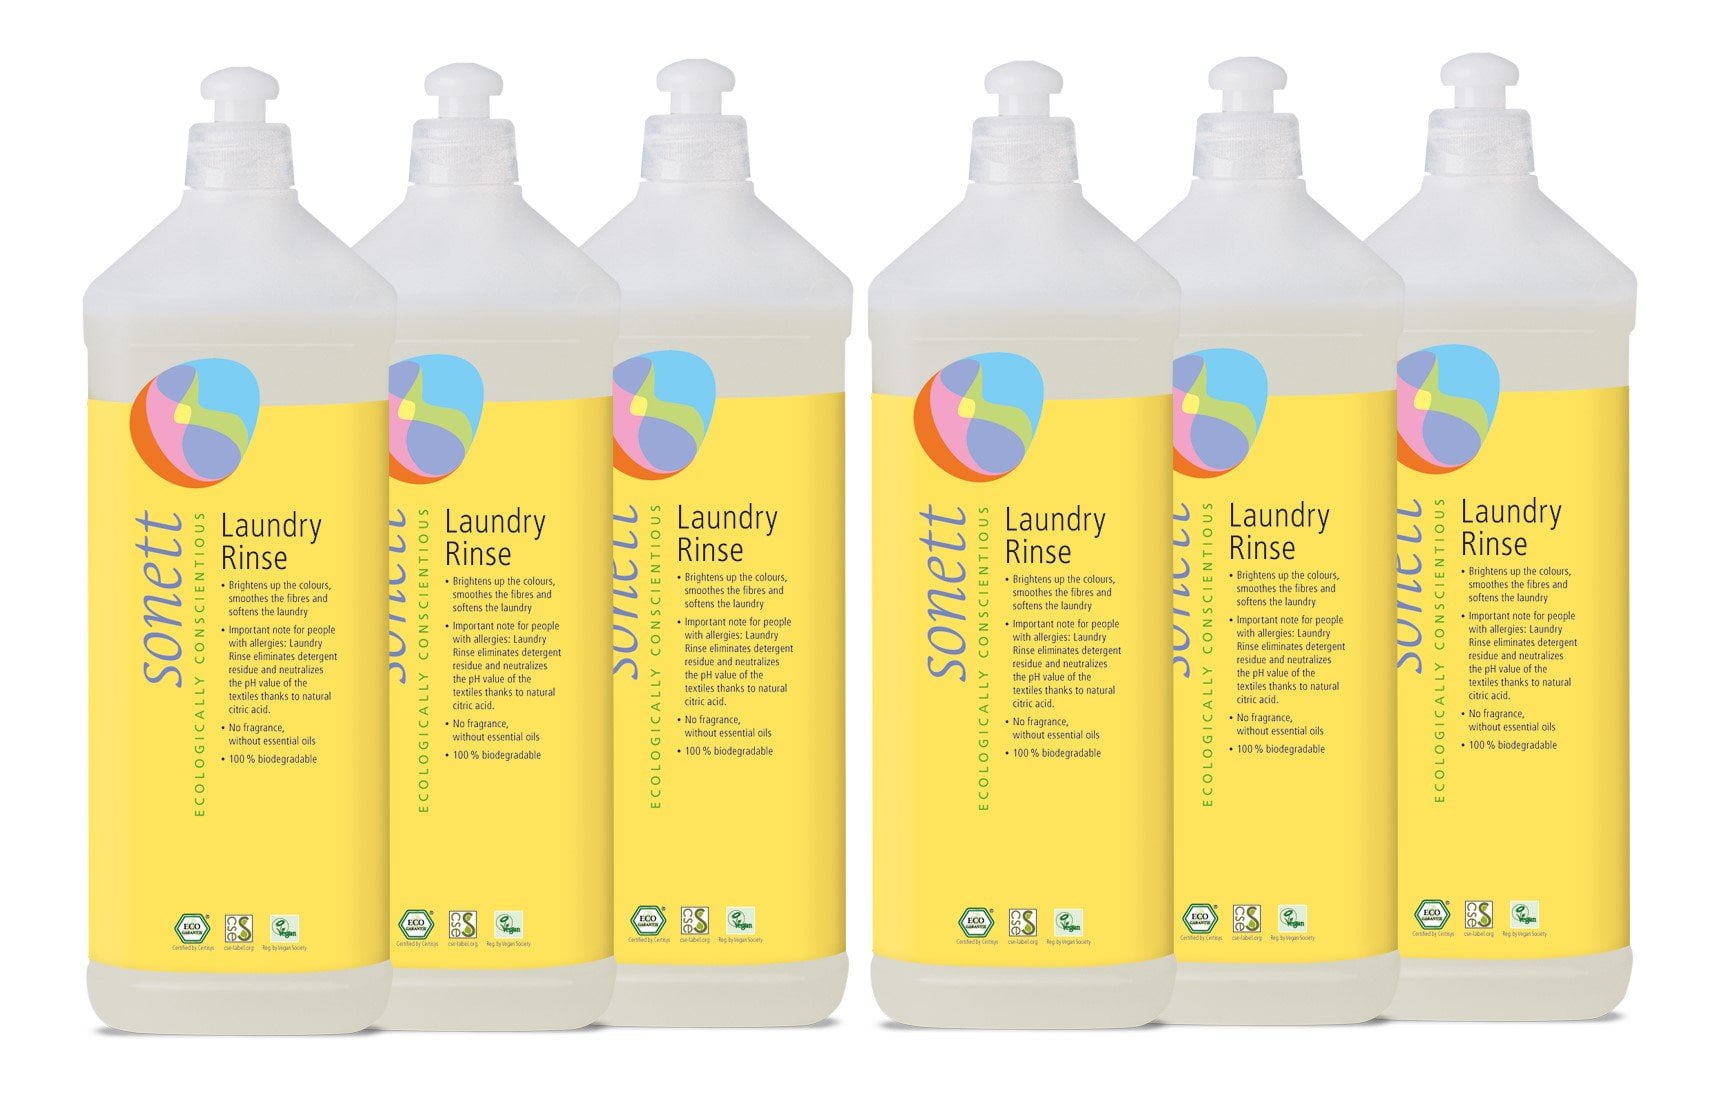 500ml Underwear Laundry Detergent Cleaning Agent Liquid Supplies